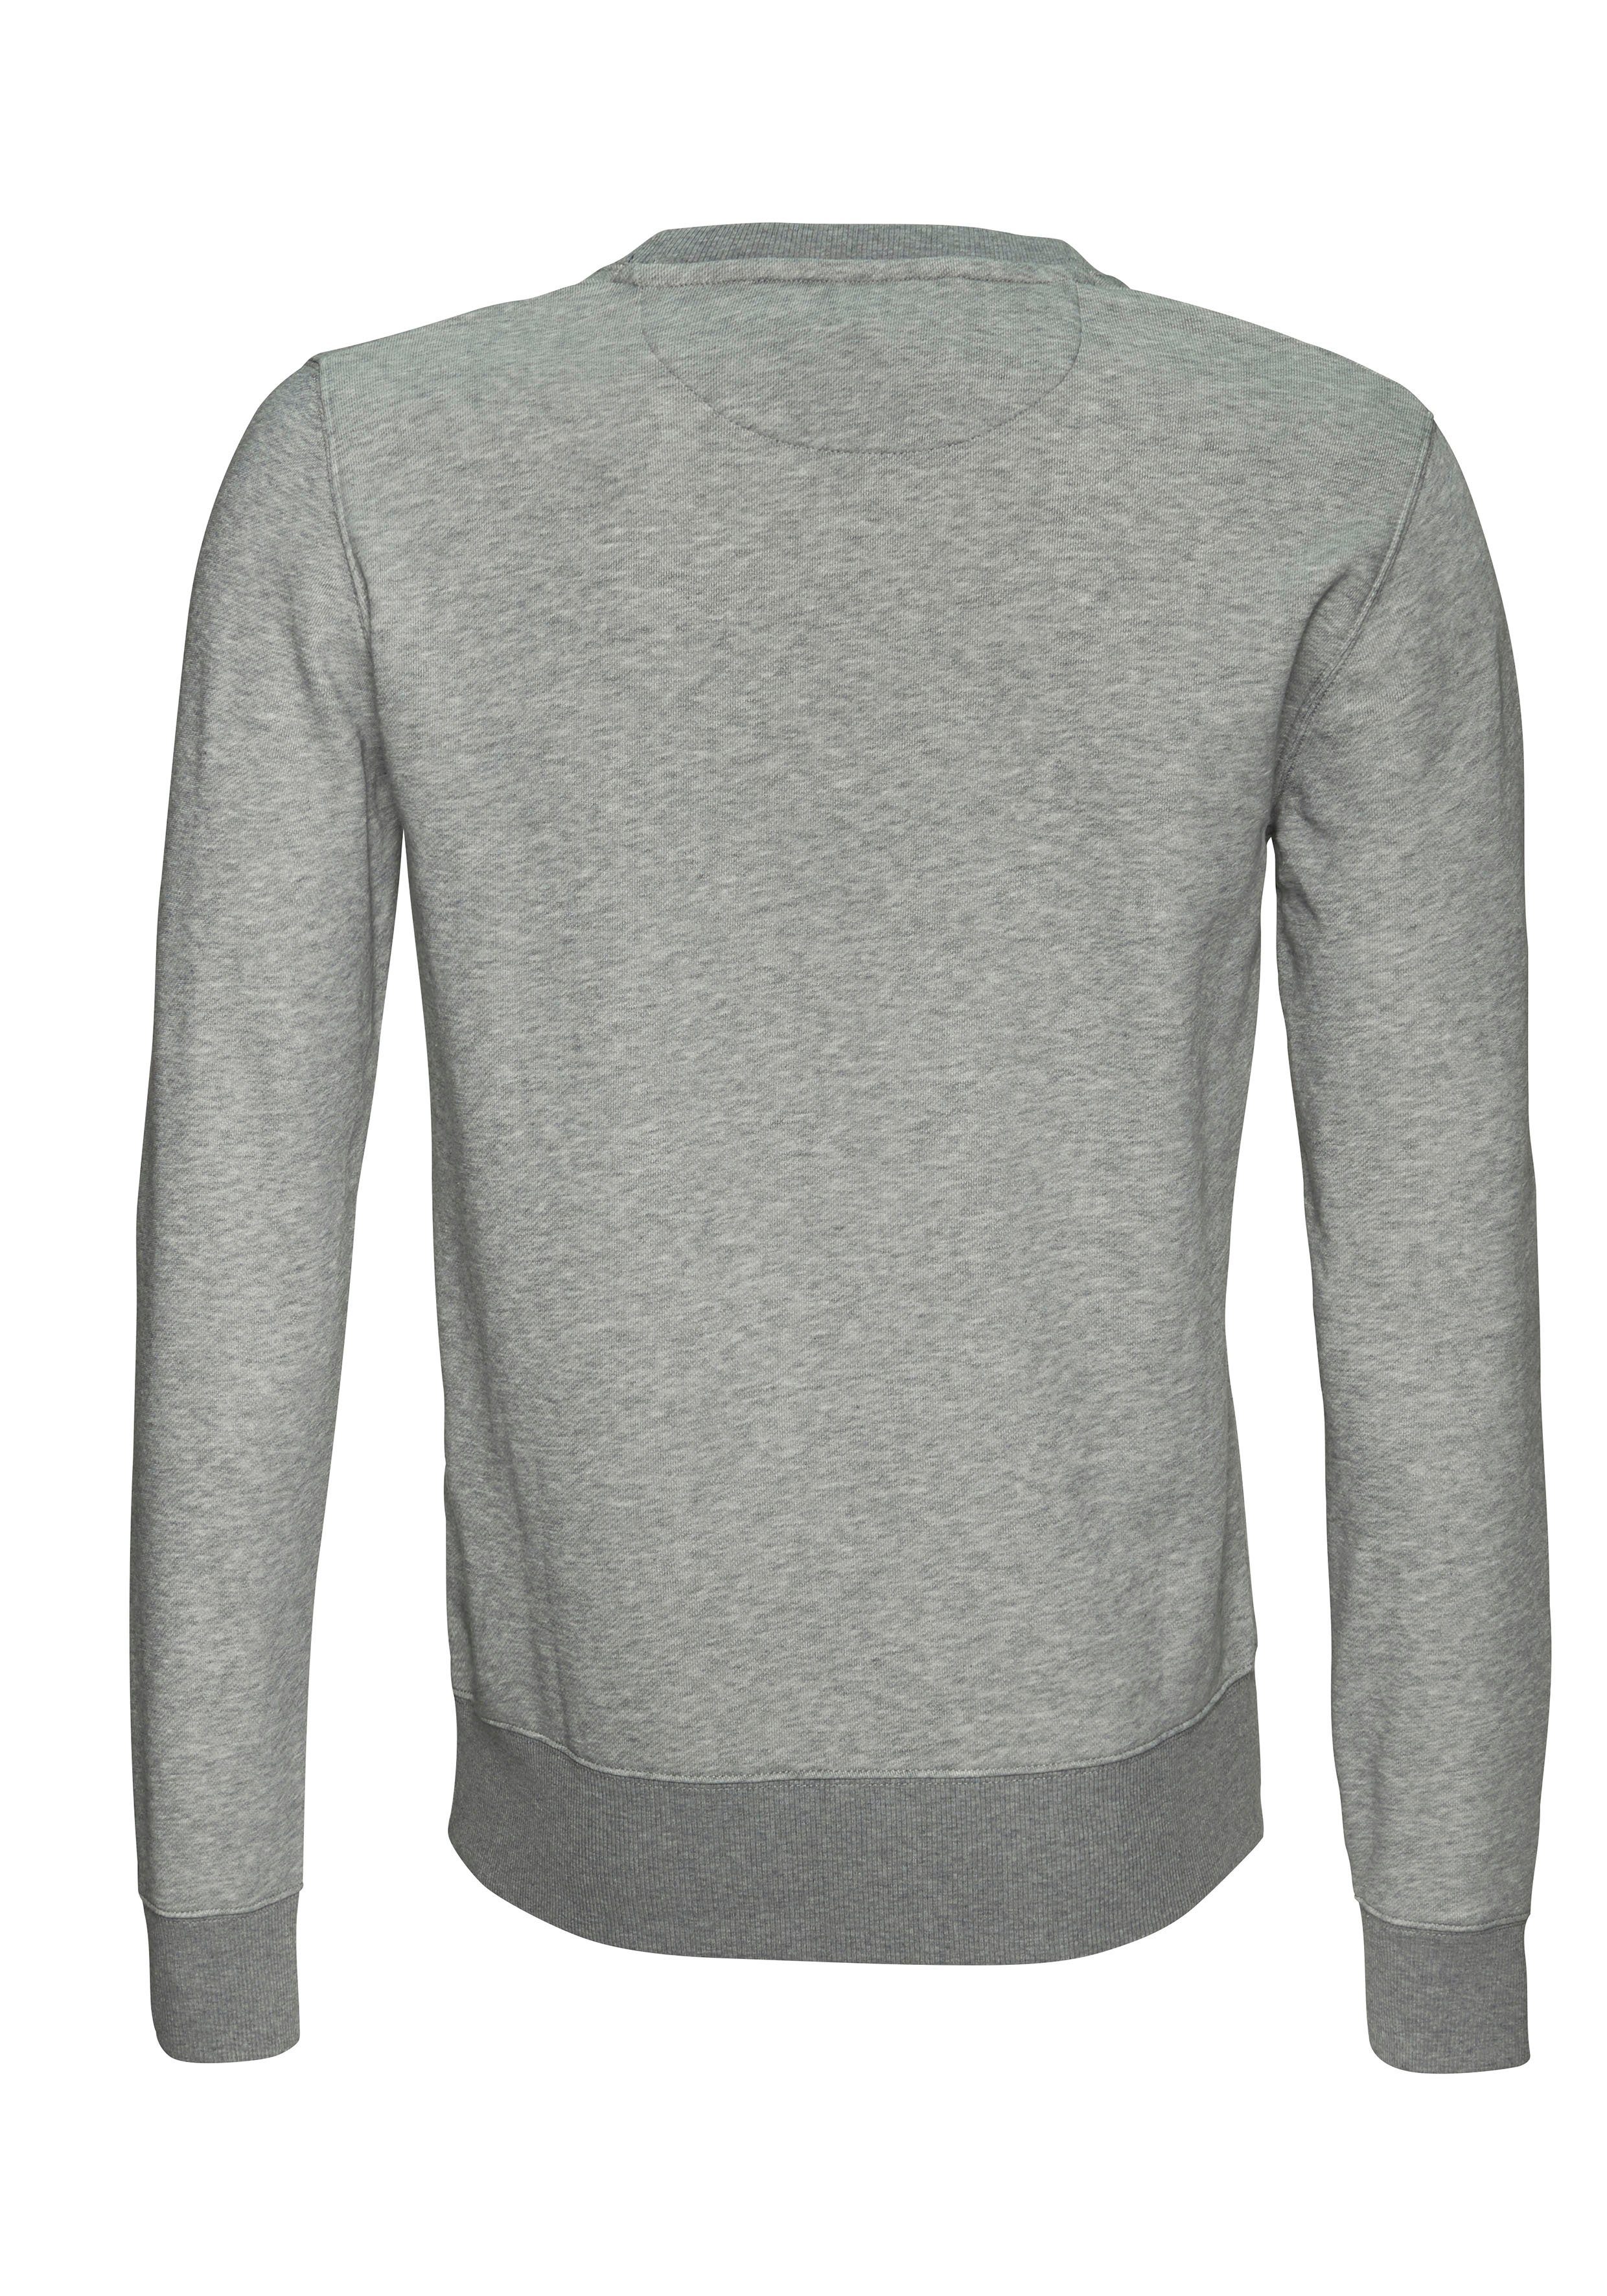 ORIGINAL Saum Rippbündchen grey melange SWEAT C-NECK Ärmel und Sweatshirt Gant an mit